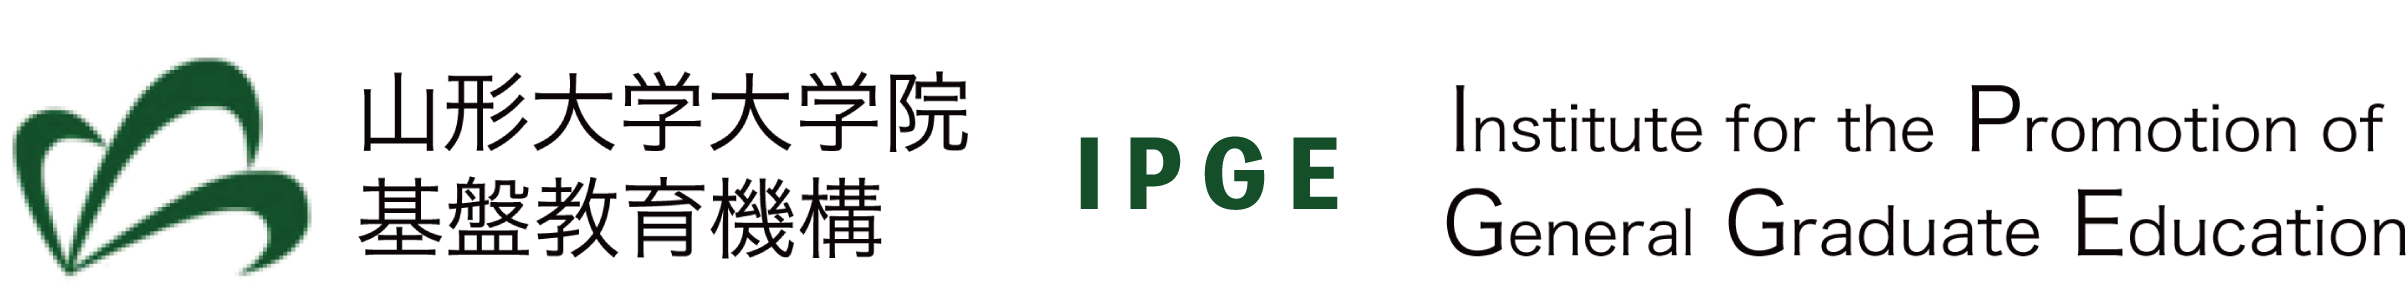 山形大学大学院基盤教育機構（IPGE）2019